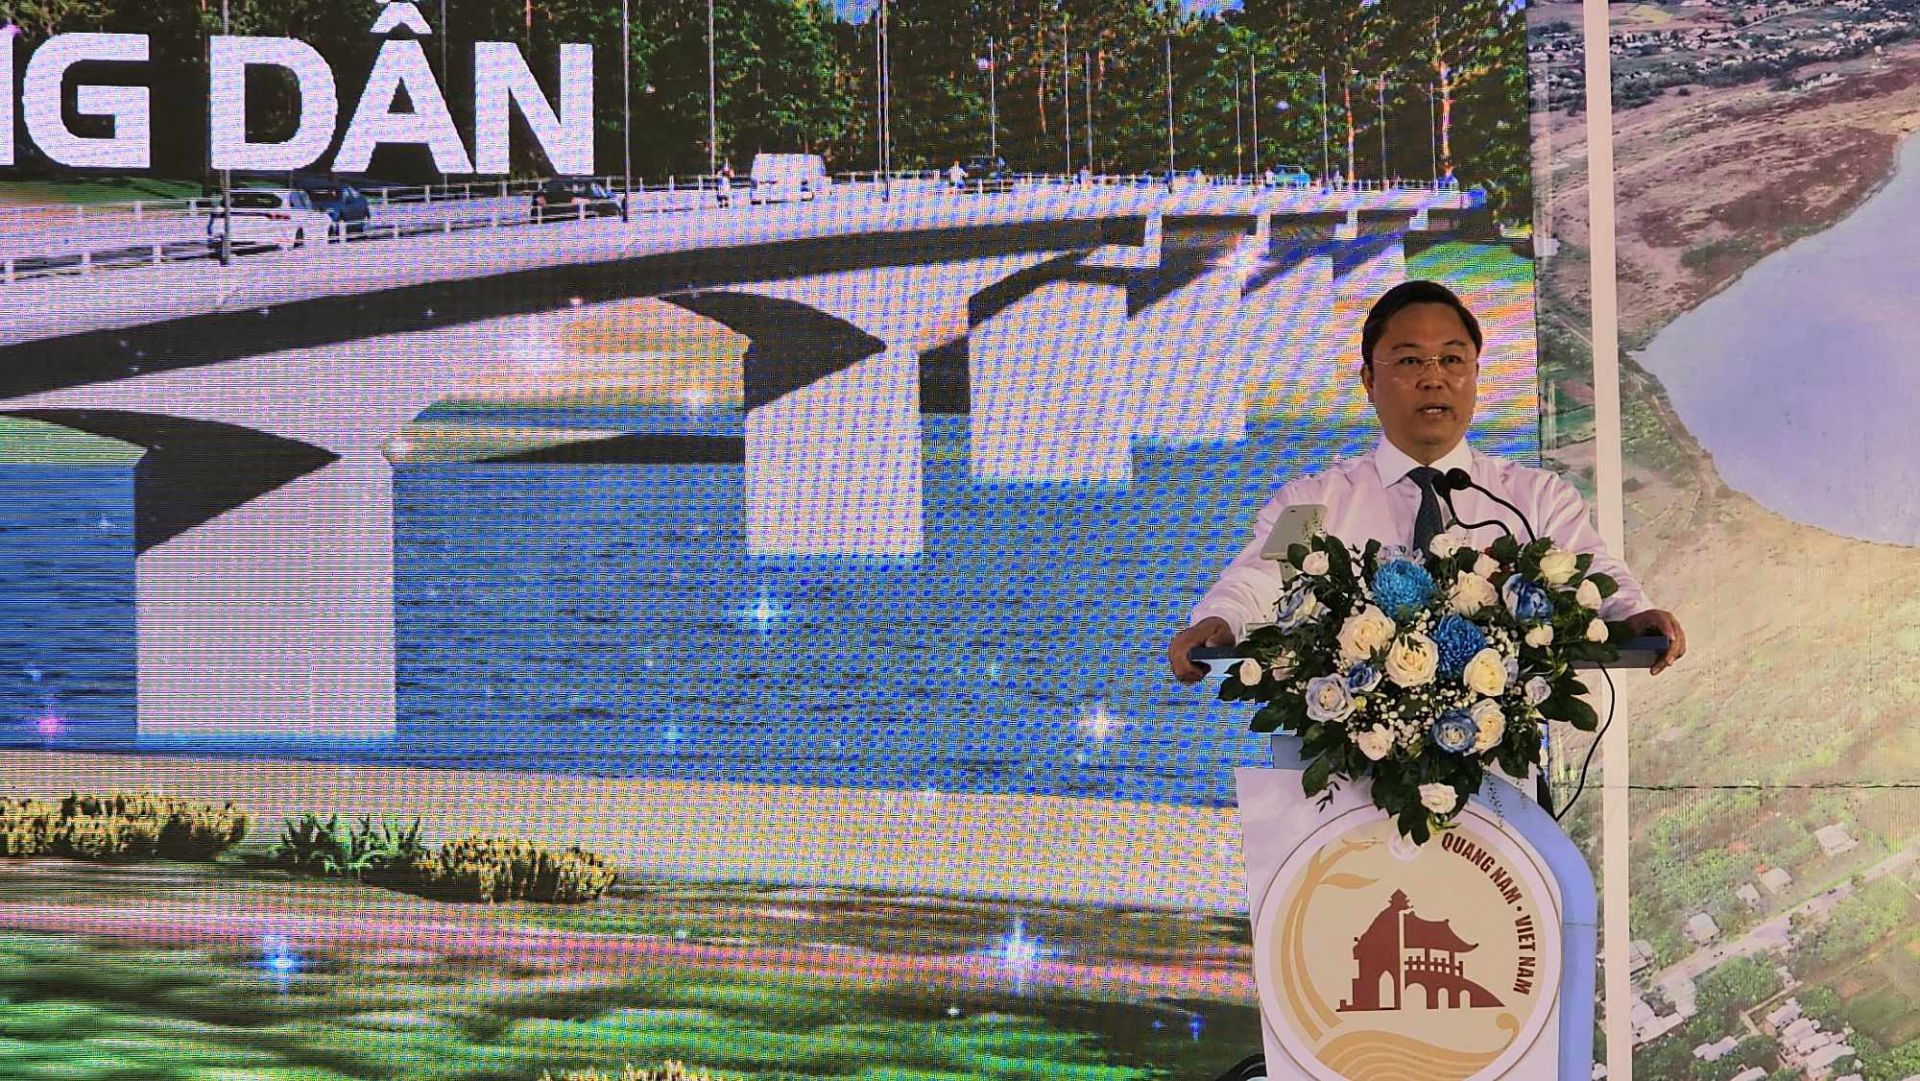 Phát biểu tại buổi lễ, ông Lê Trí Thanh, Chủ tịch UBND tỉnh Quảng Nam đề nghị các sở, ban, ngành liên quan chủ động, thường xuyên theo dõi tiến độ thi công công trình, giải quyết kịp thời các vướng mắc của chủ đầu tư và đơn vị thi công